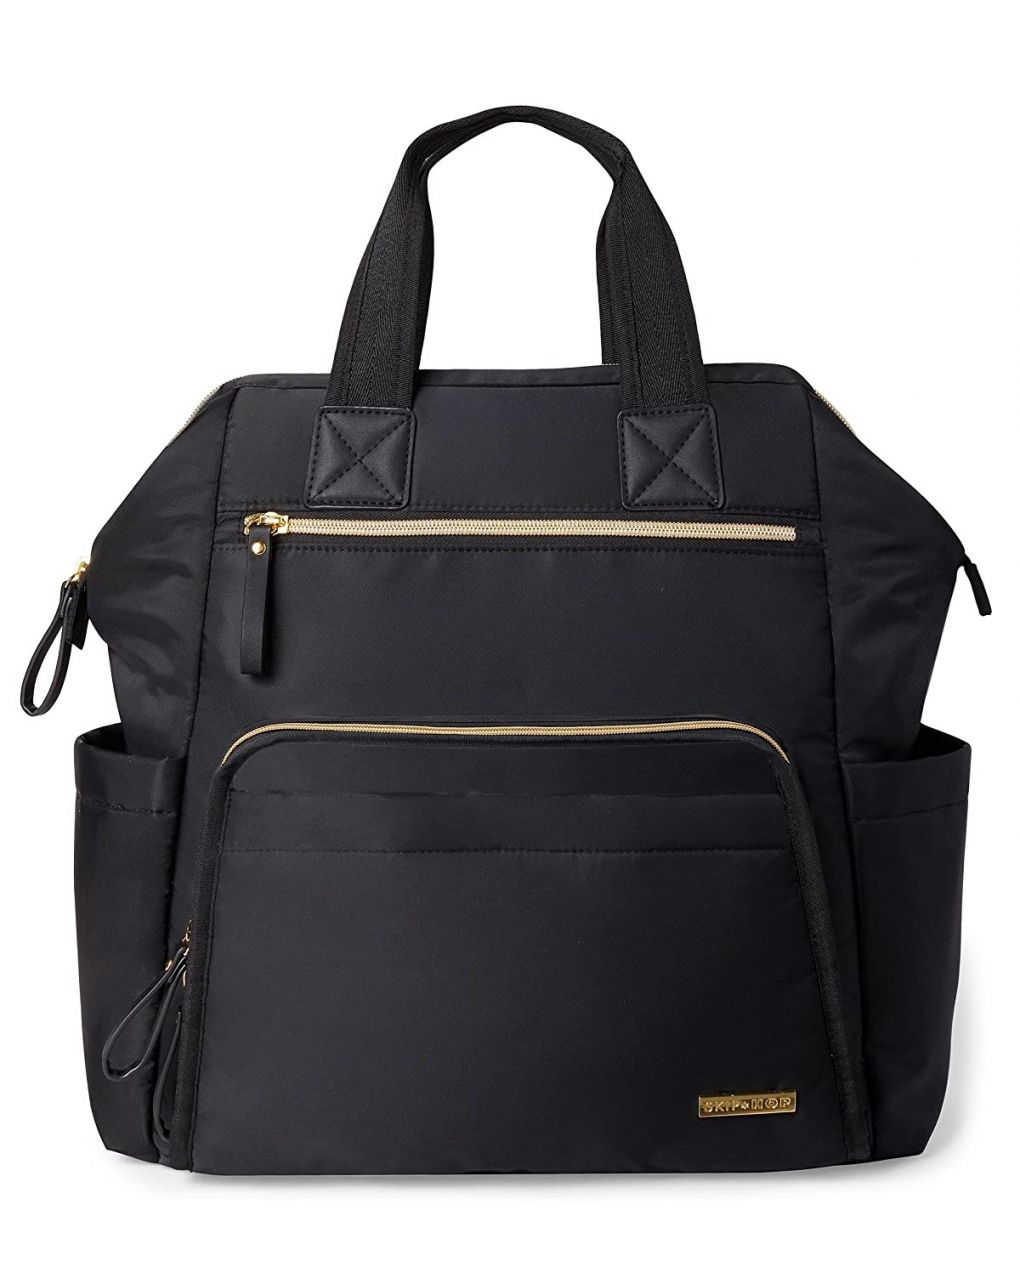 Skip hop τσάντα αλλαξιέρα main frame wide open backpack black with gold trim - SKIP HOP